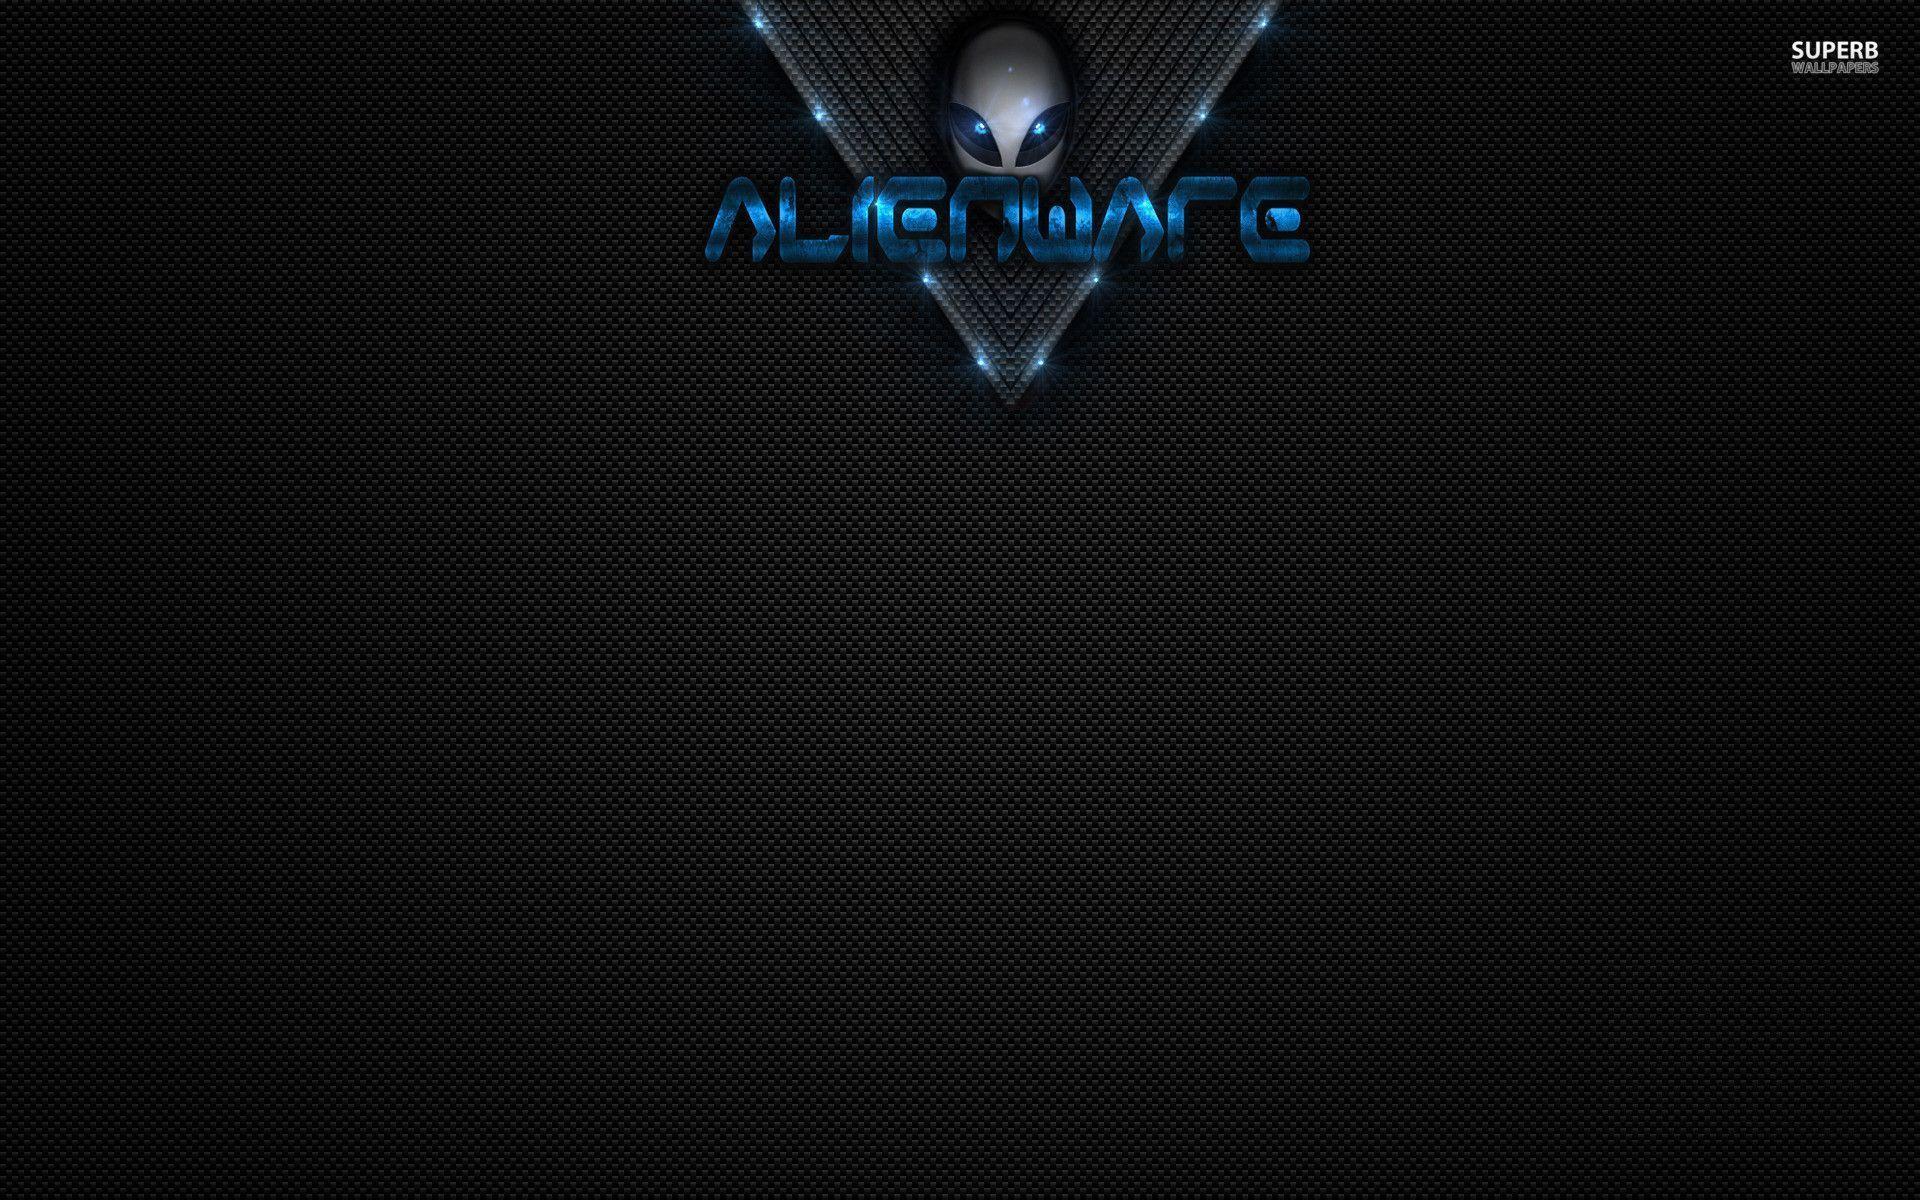 Alienware Computer wallpaper